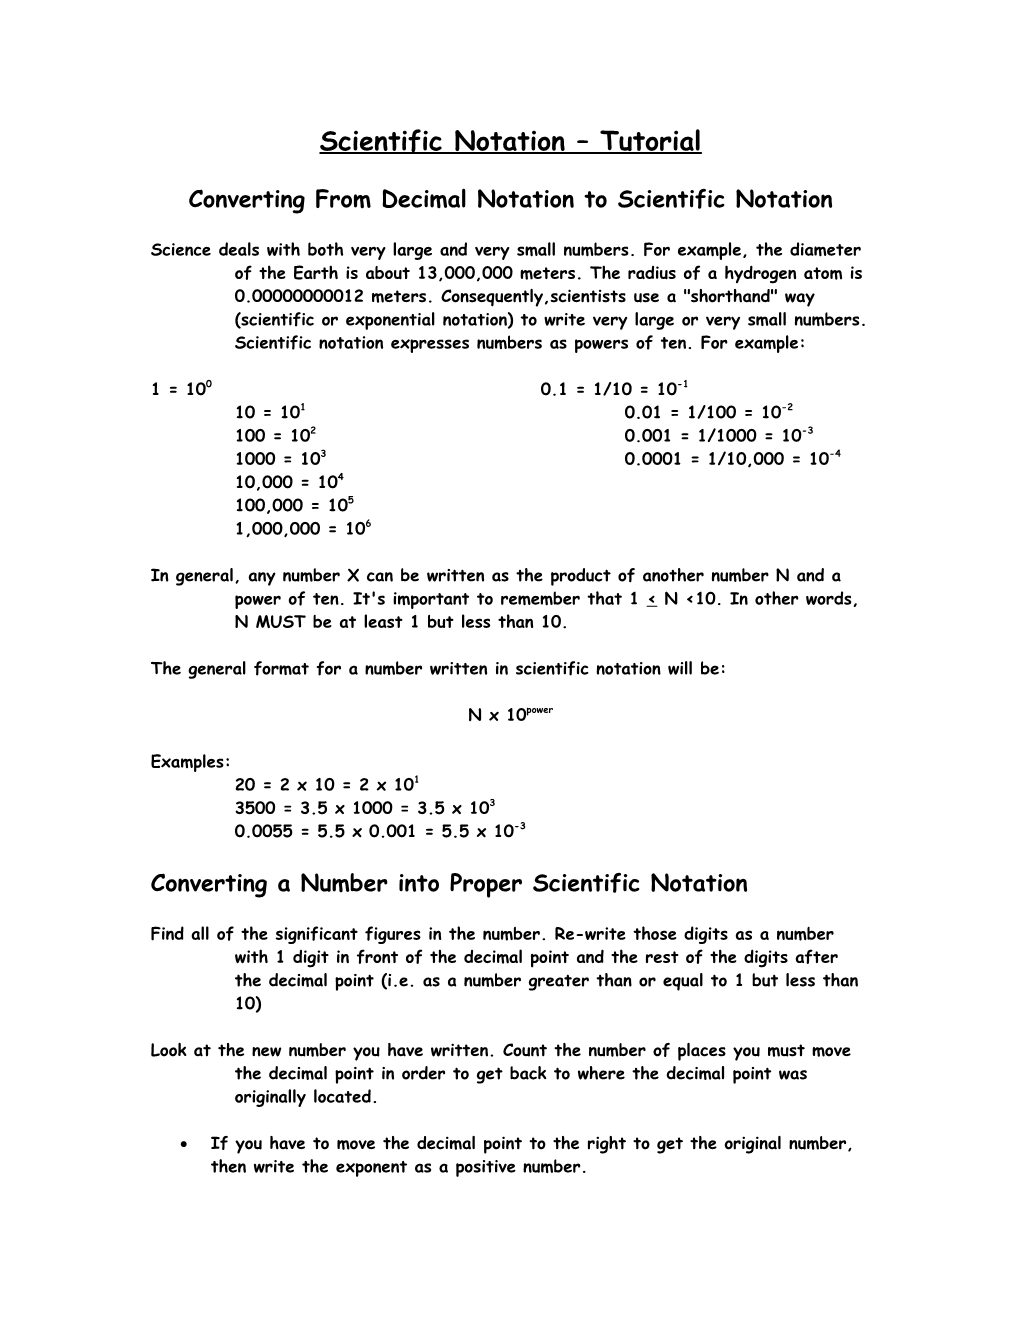 Scientific Notation Tutorial